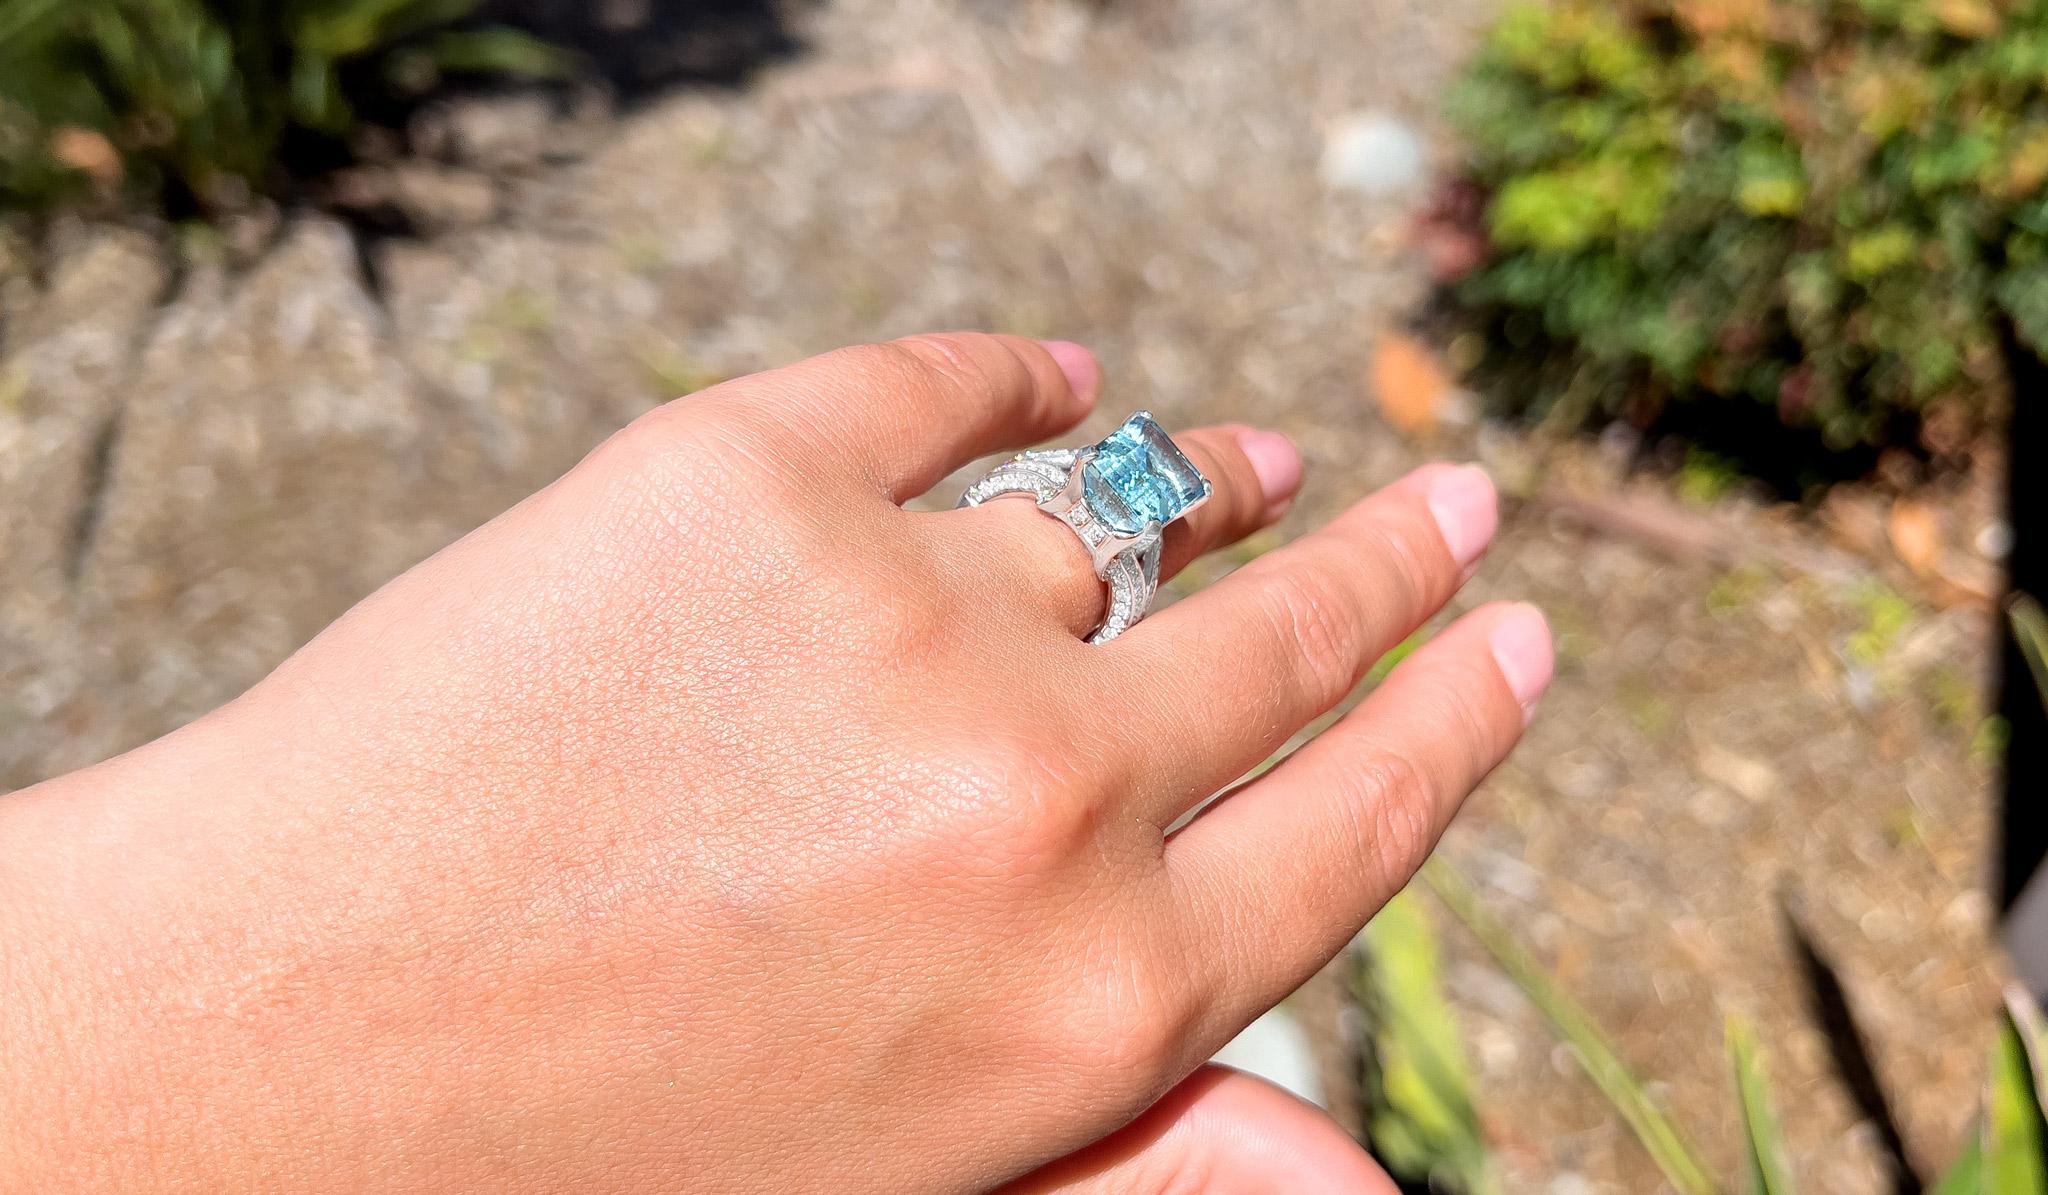 princess diana aquamarine ring carat size